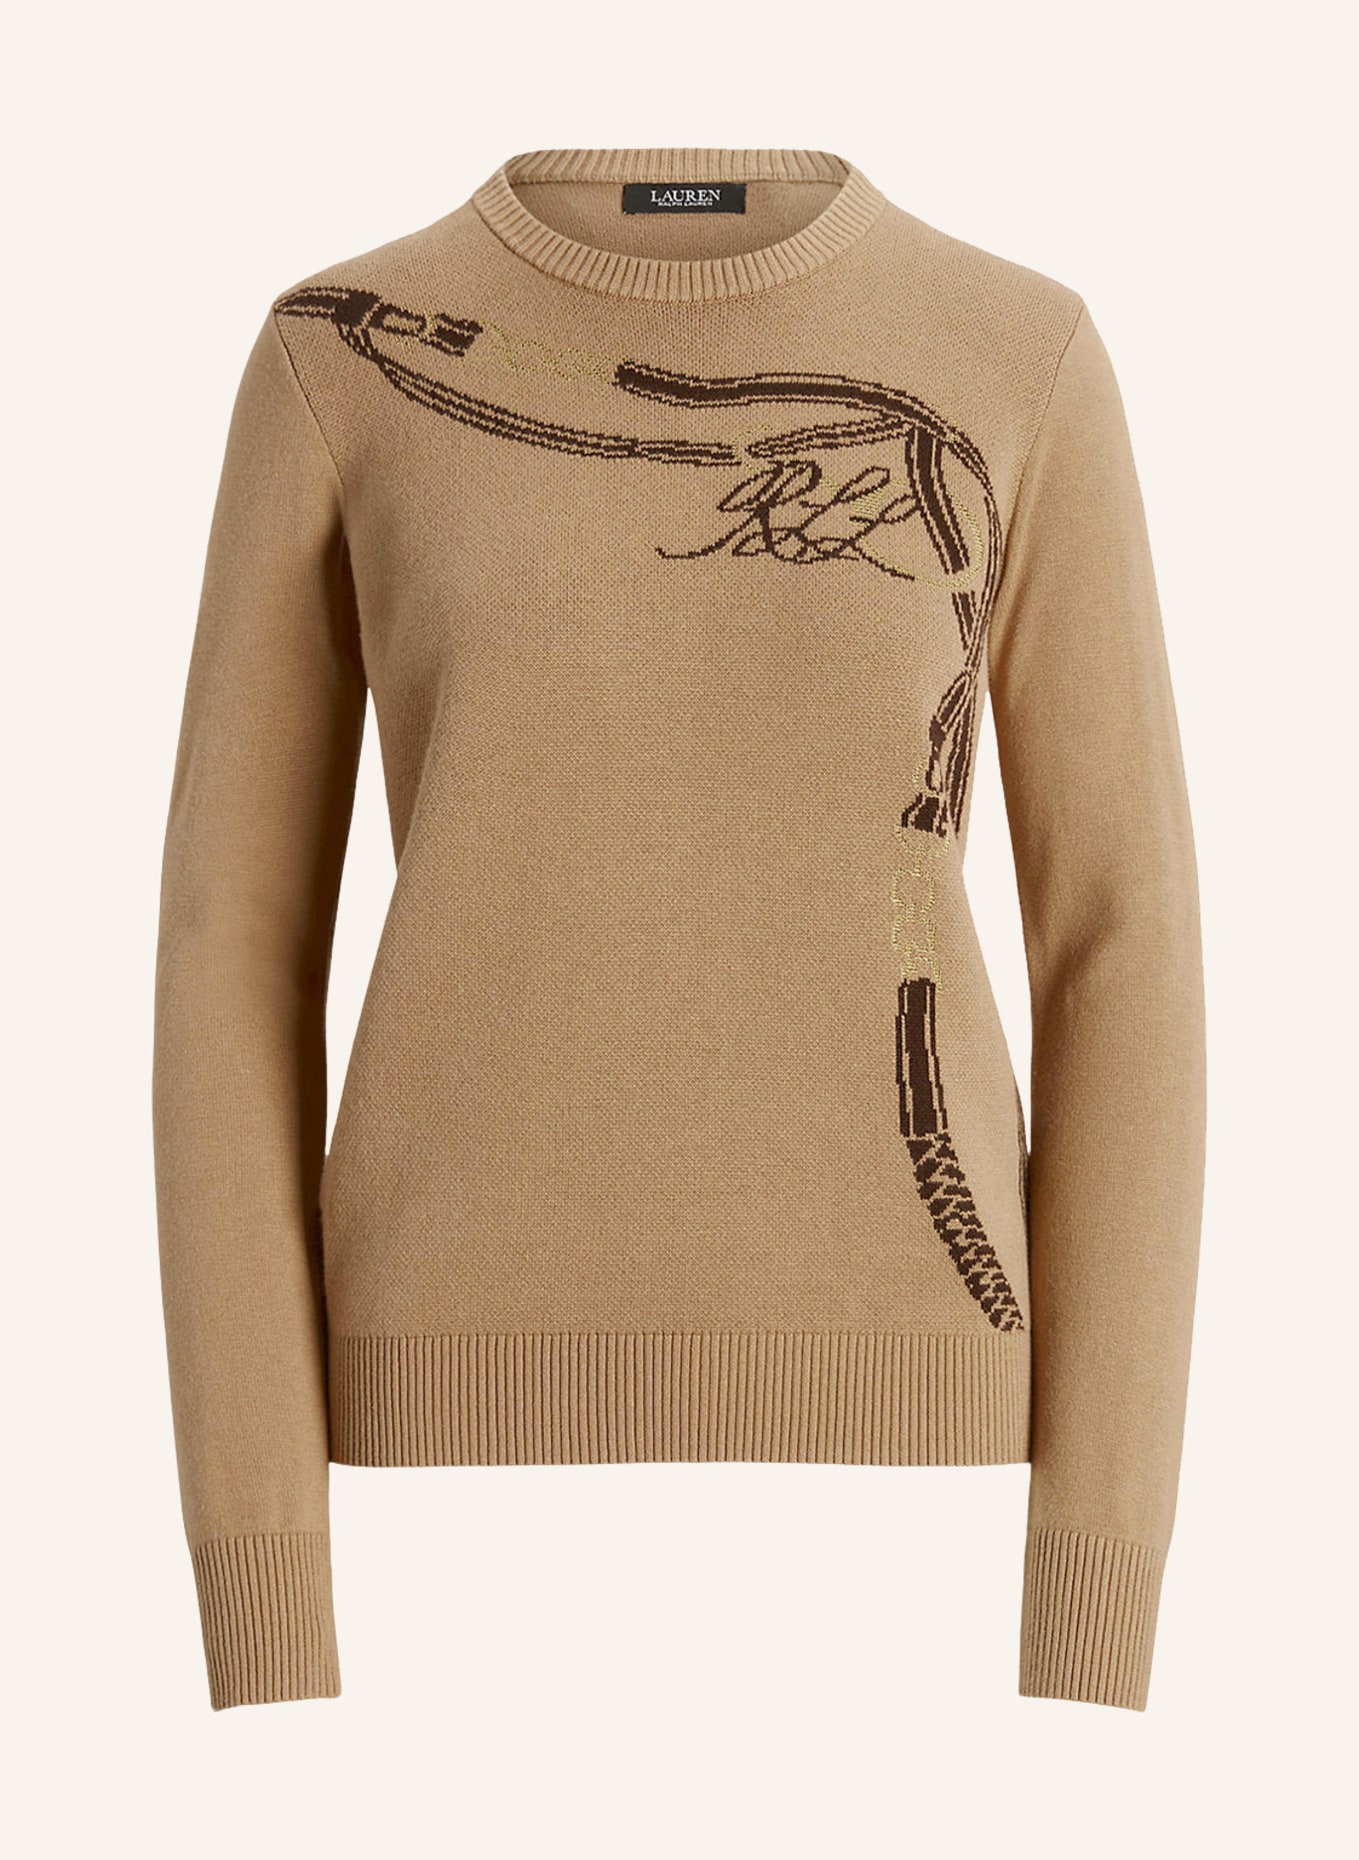 LAUREN RALPH LAUREN Sweater, Color: DARK BROWN/ CAMEL (Image 1)